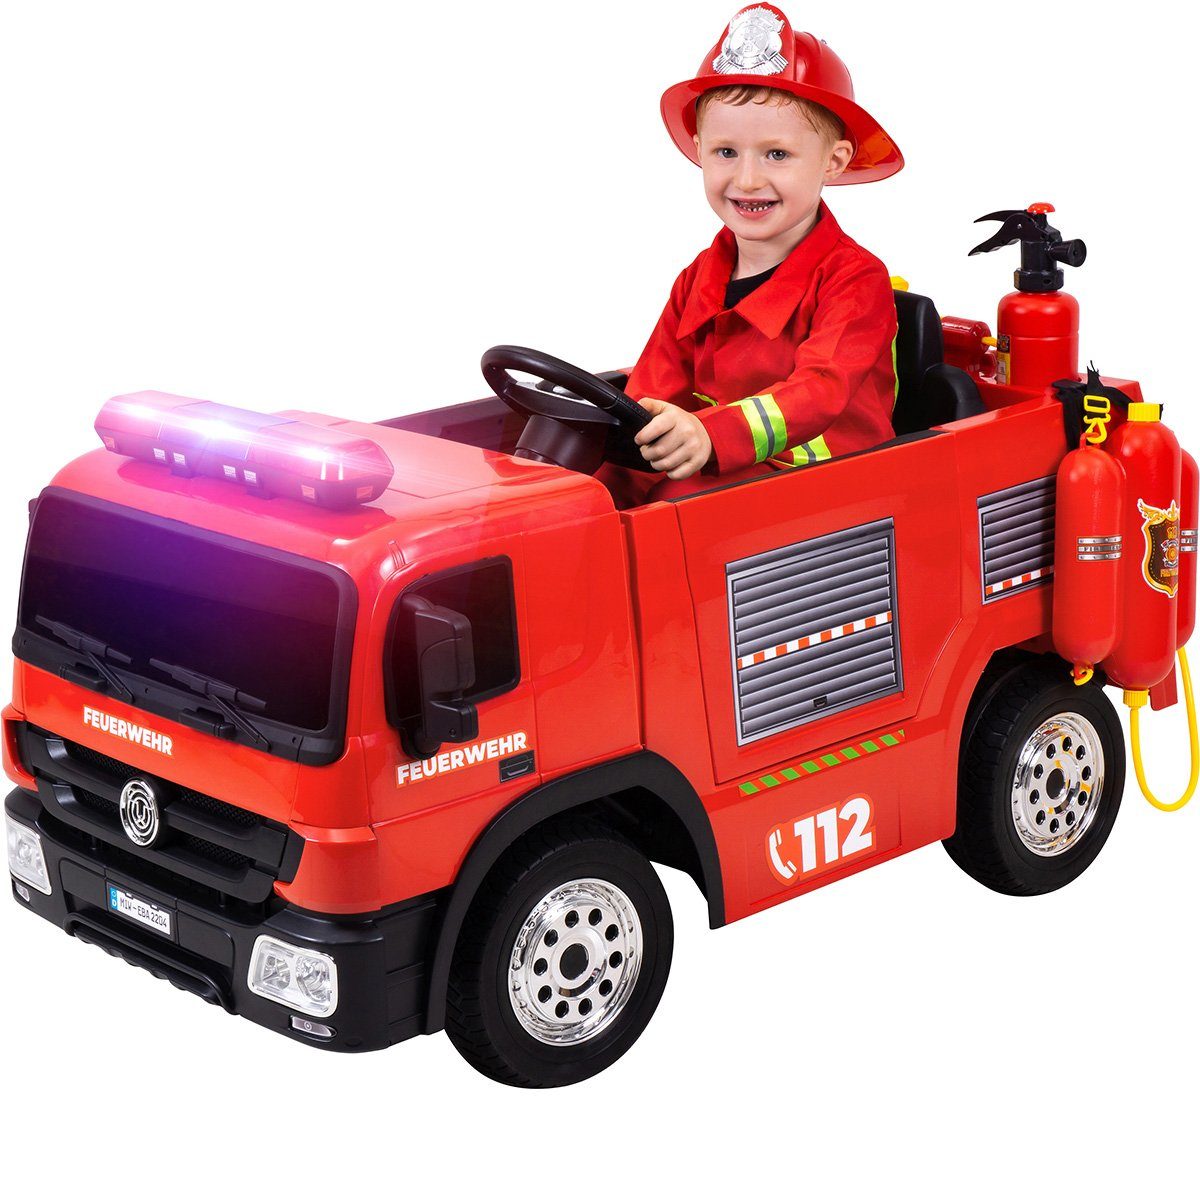 Actionbikes Motors Elektro-Kinderauto Kinder Auto Feuerwehr SX1818 Elektro - Fernbedienung - Wasserspritze, Belastbarkeit 40 kg, (4-tlg), Kinder Fahrzeug Spielzeug ab 3 Jahre elektrisch - Sirene & Bluetooth